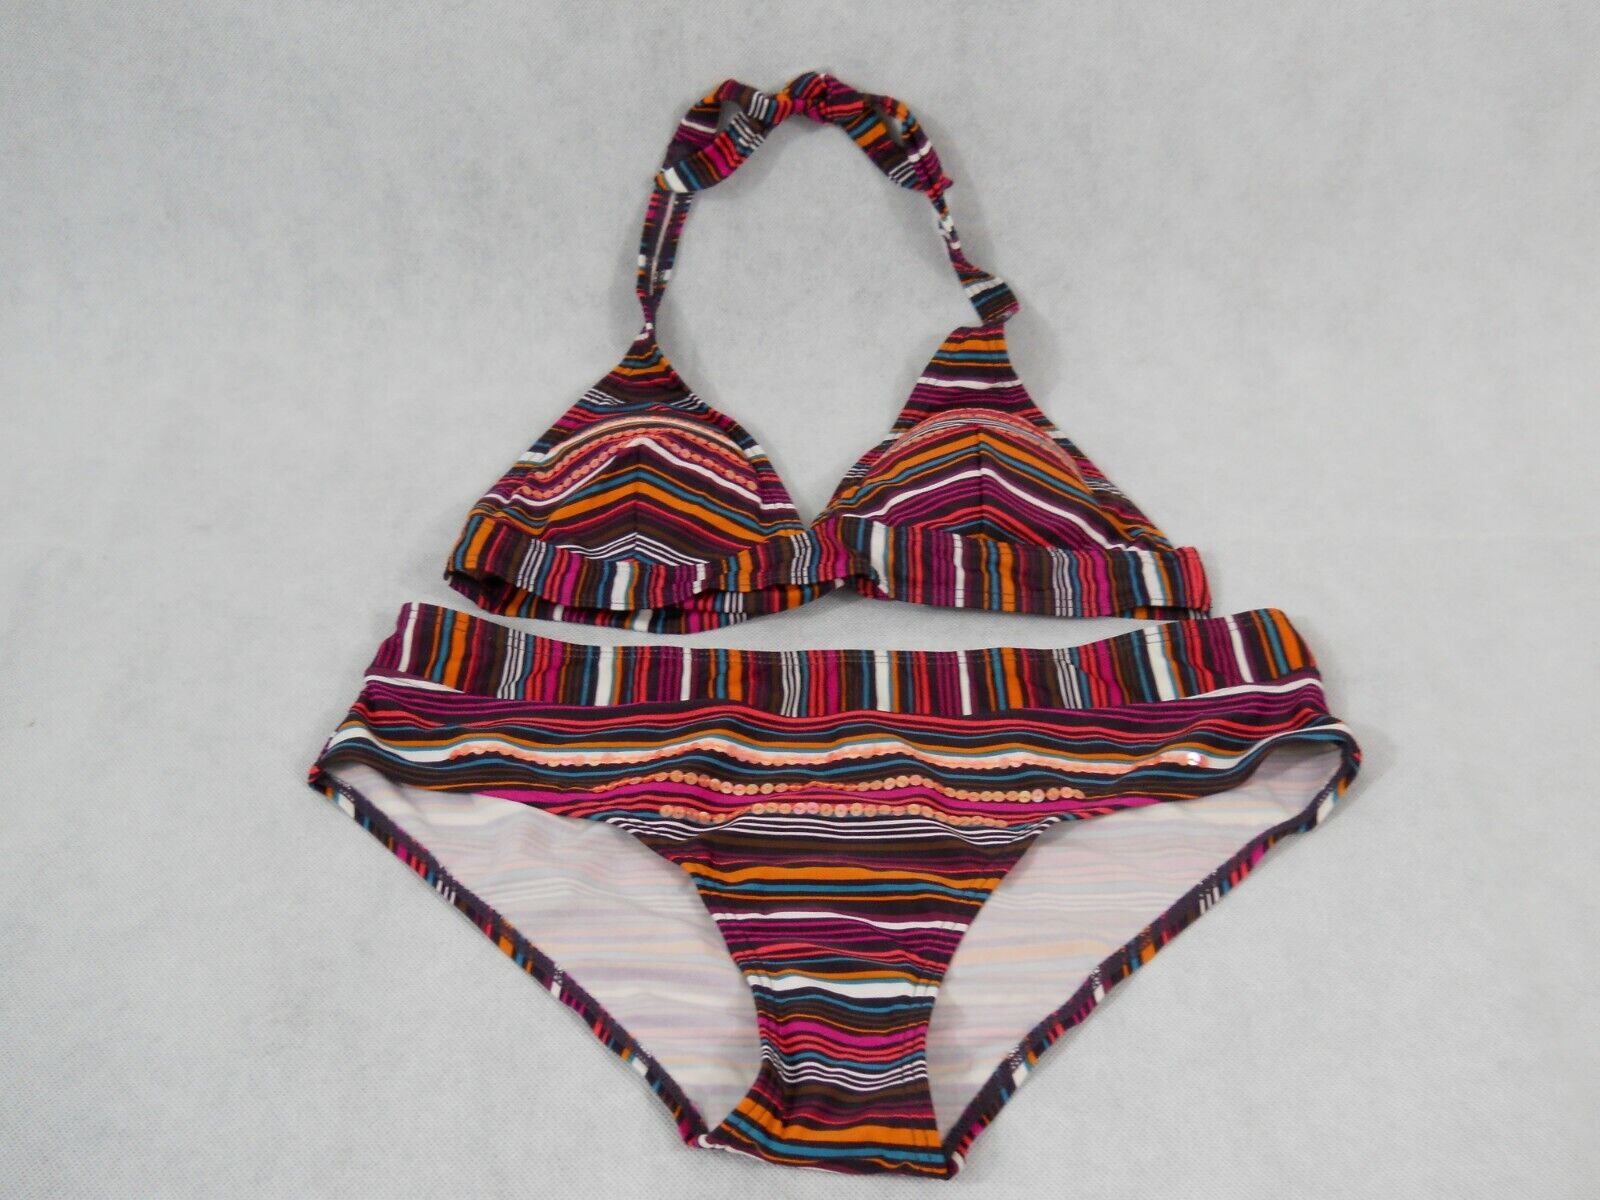 Afhankelijkheid Twinkelen Waden Hema Women's Two Piece Halter Top Bikini Swimwear Sequined Multicolored Sz:  S | eBay